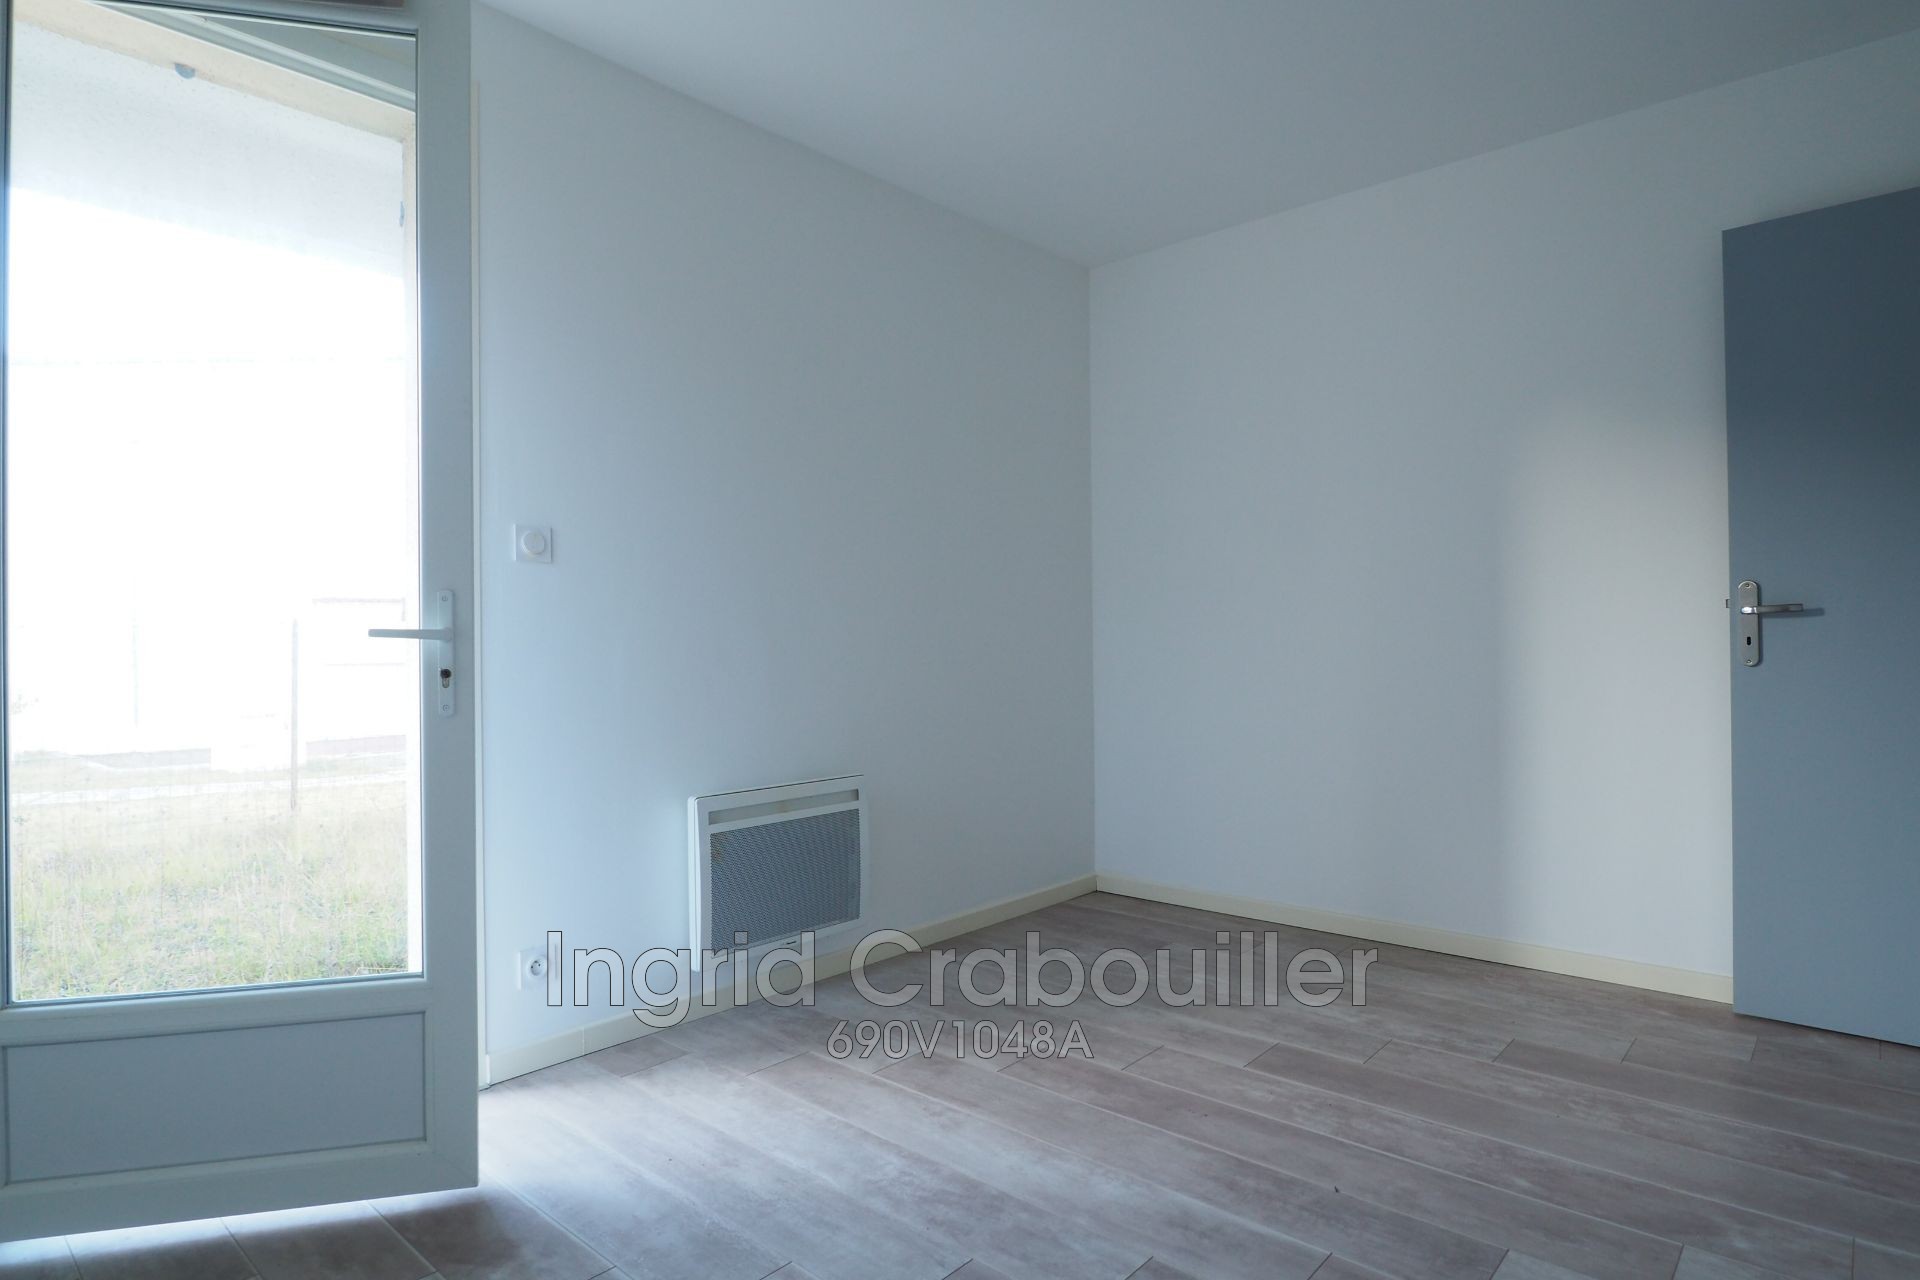 Vente appartement Vaux-sur-Mer - réf. 690V1048A